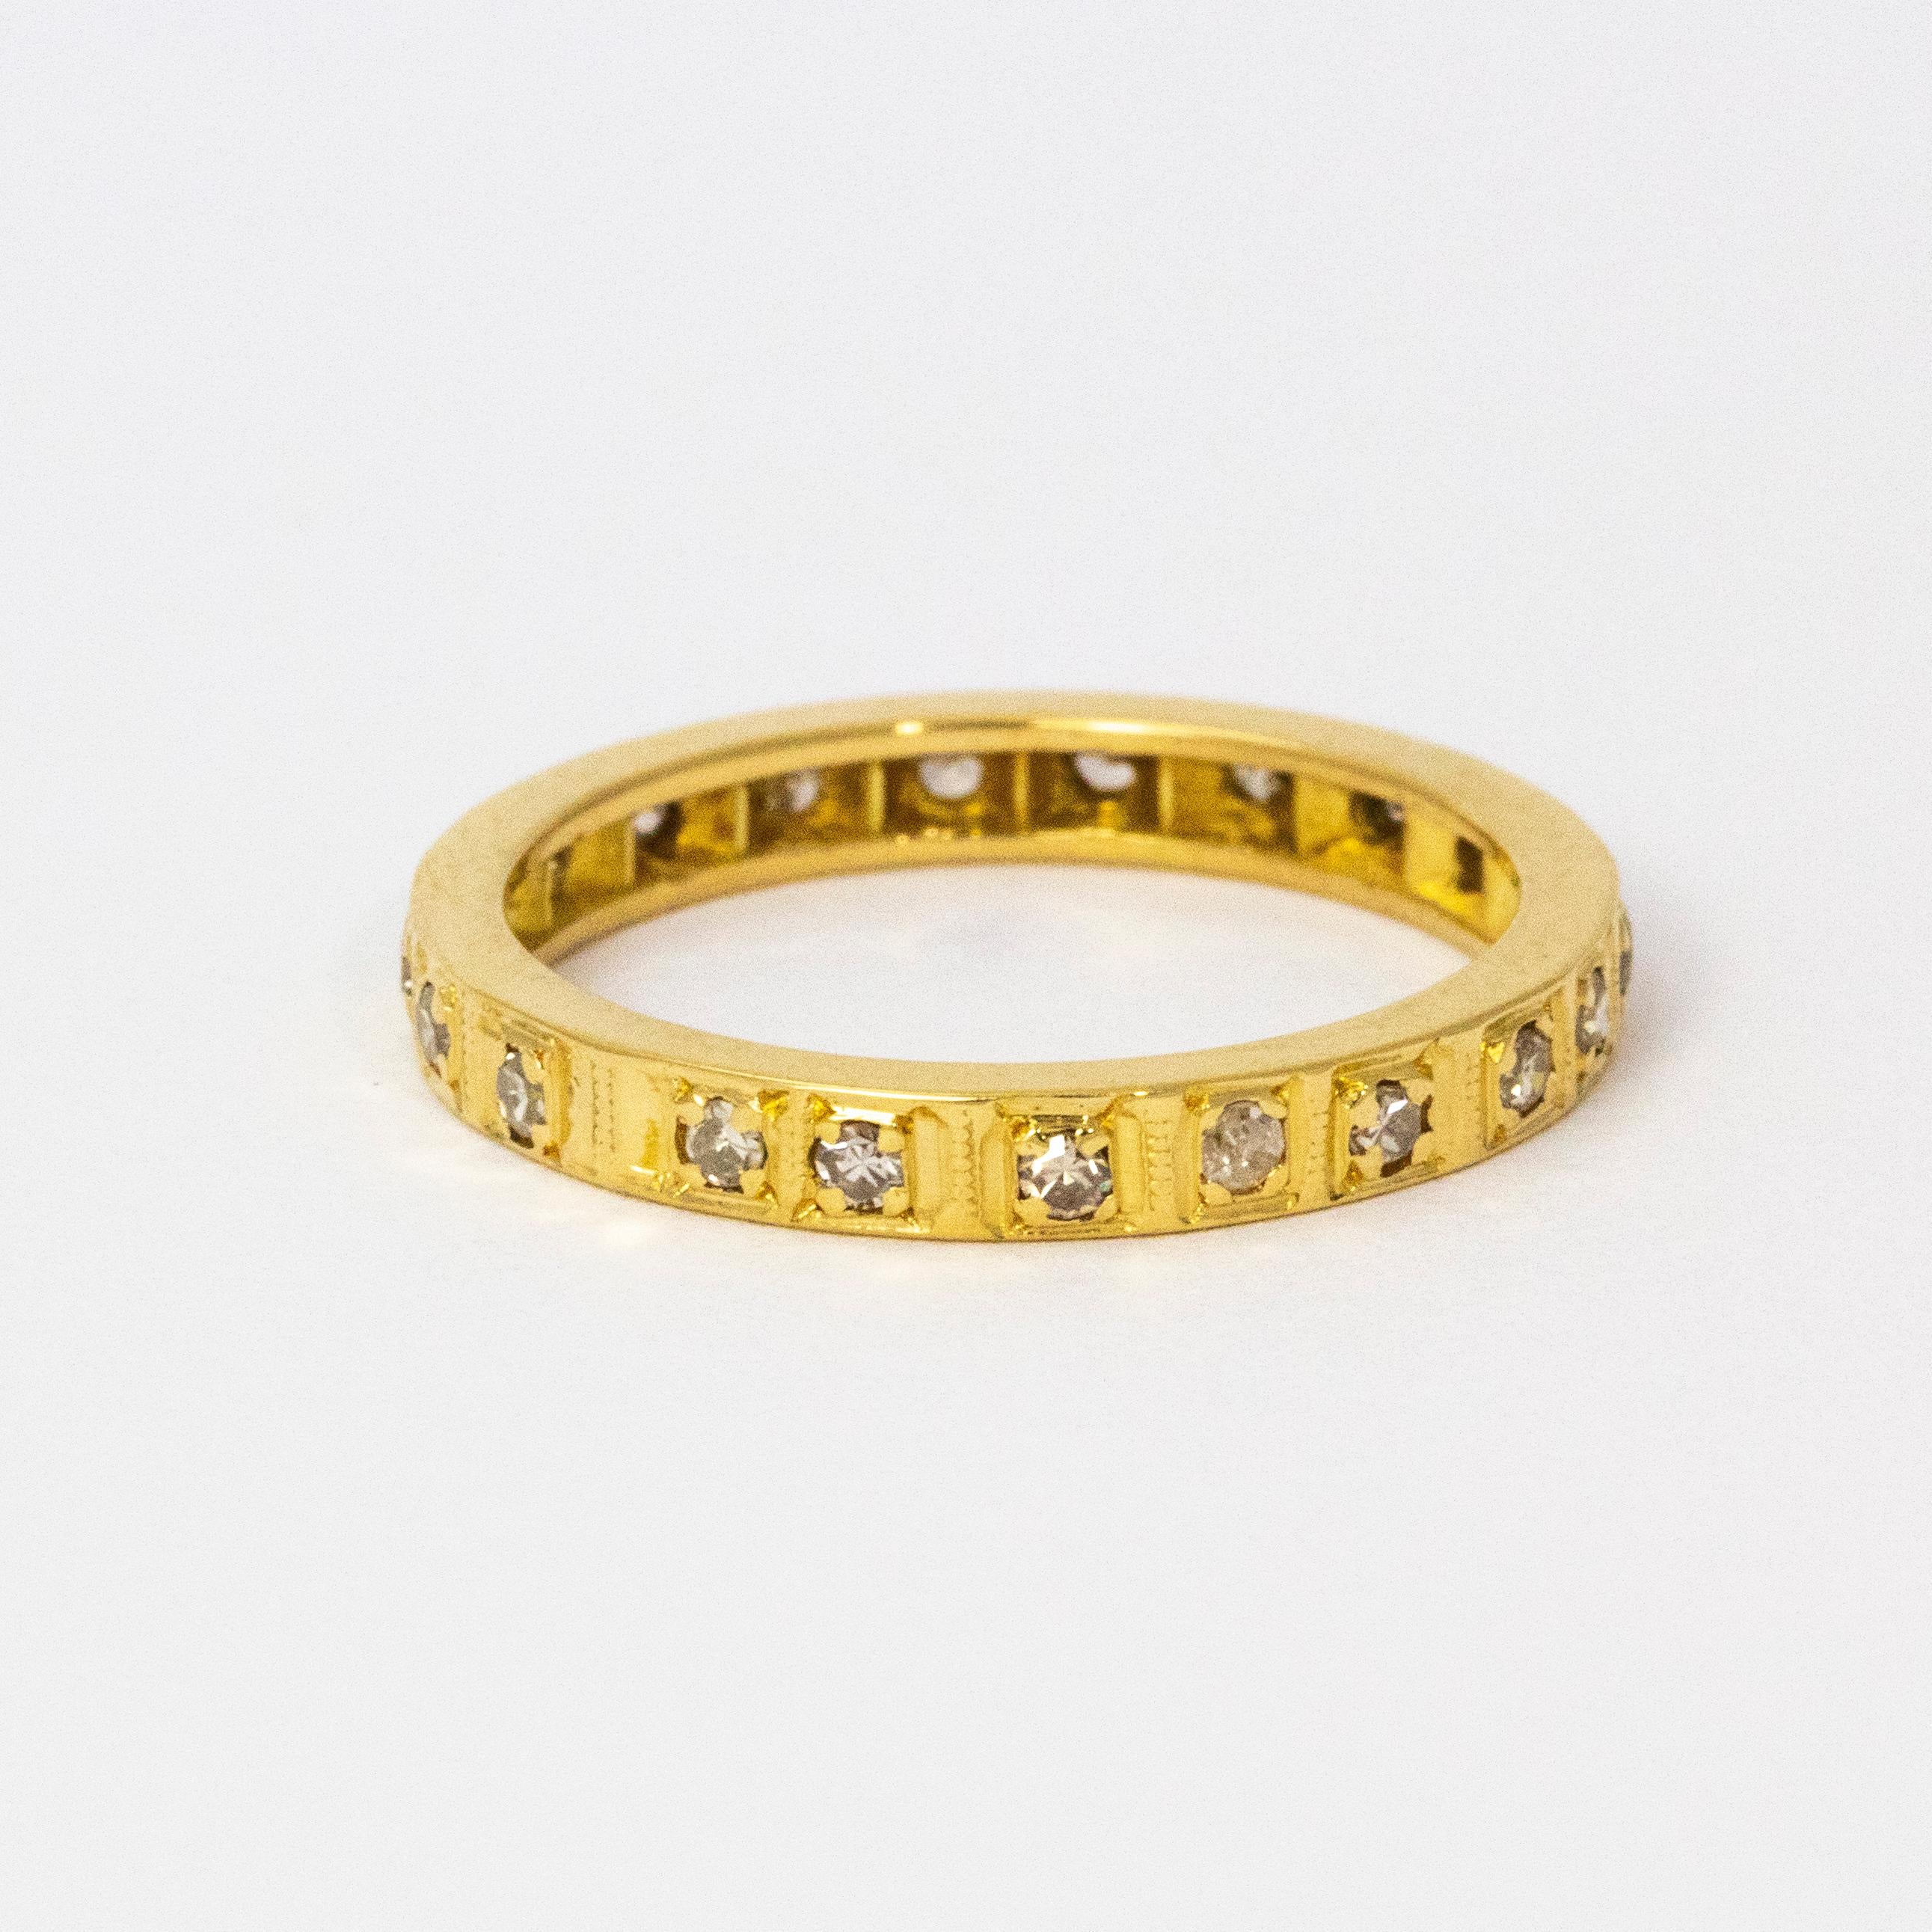 Ein exquisites Art Deco Ewigkeitsarmband, vollständig mit wunderschönen weißen Diamanten besetzt und in 18 Karat Gelbgold modelliert.

Ring Größe: L oder 6